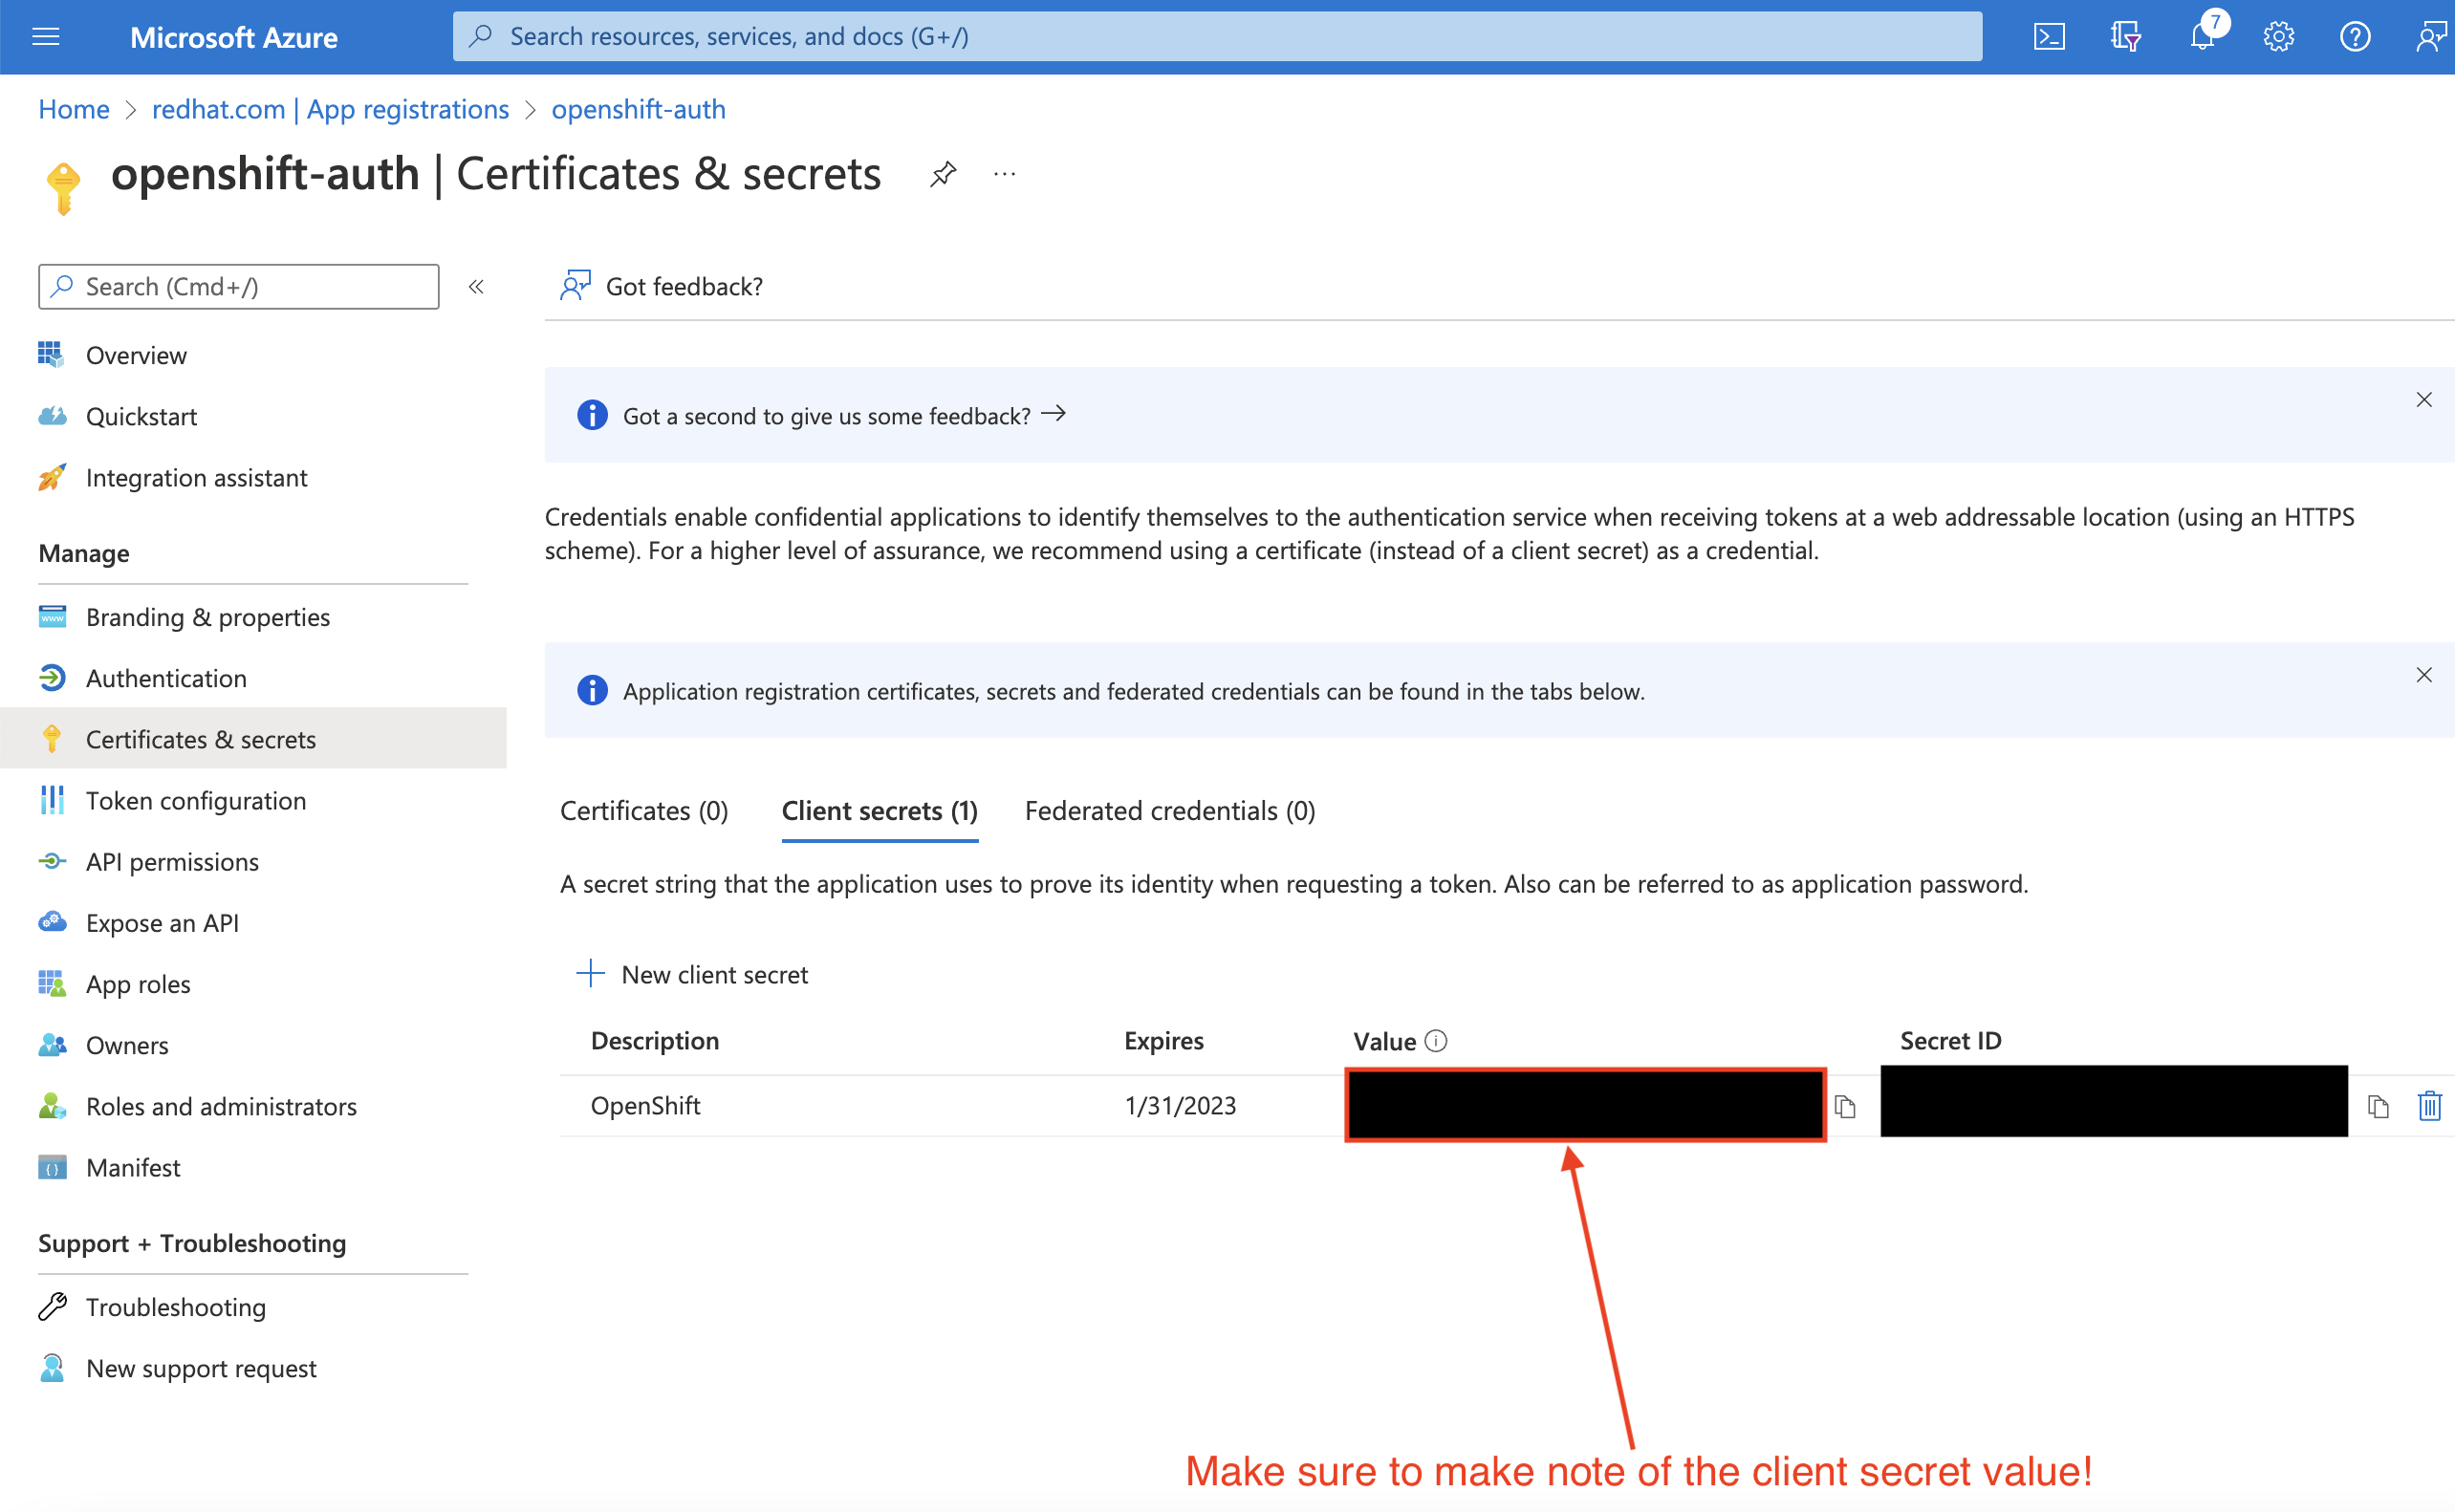 Azure Portal - Copy Client Secret page